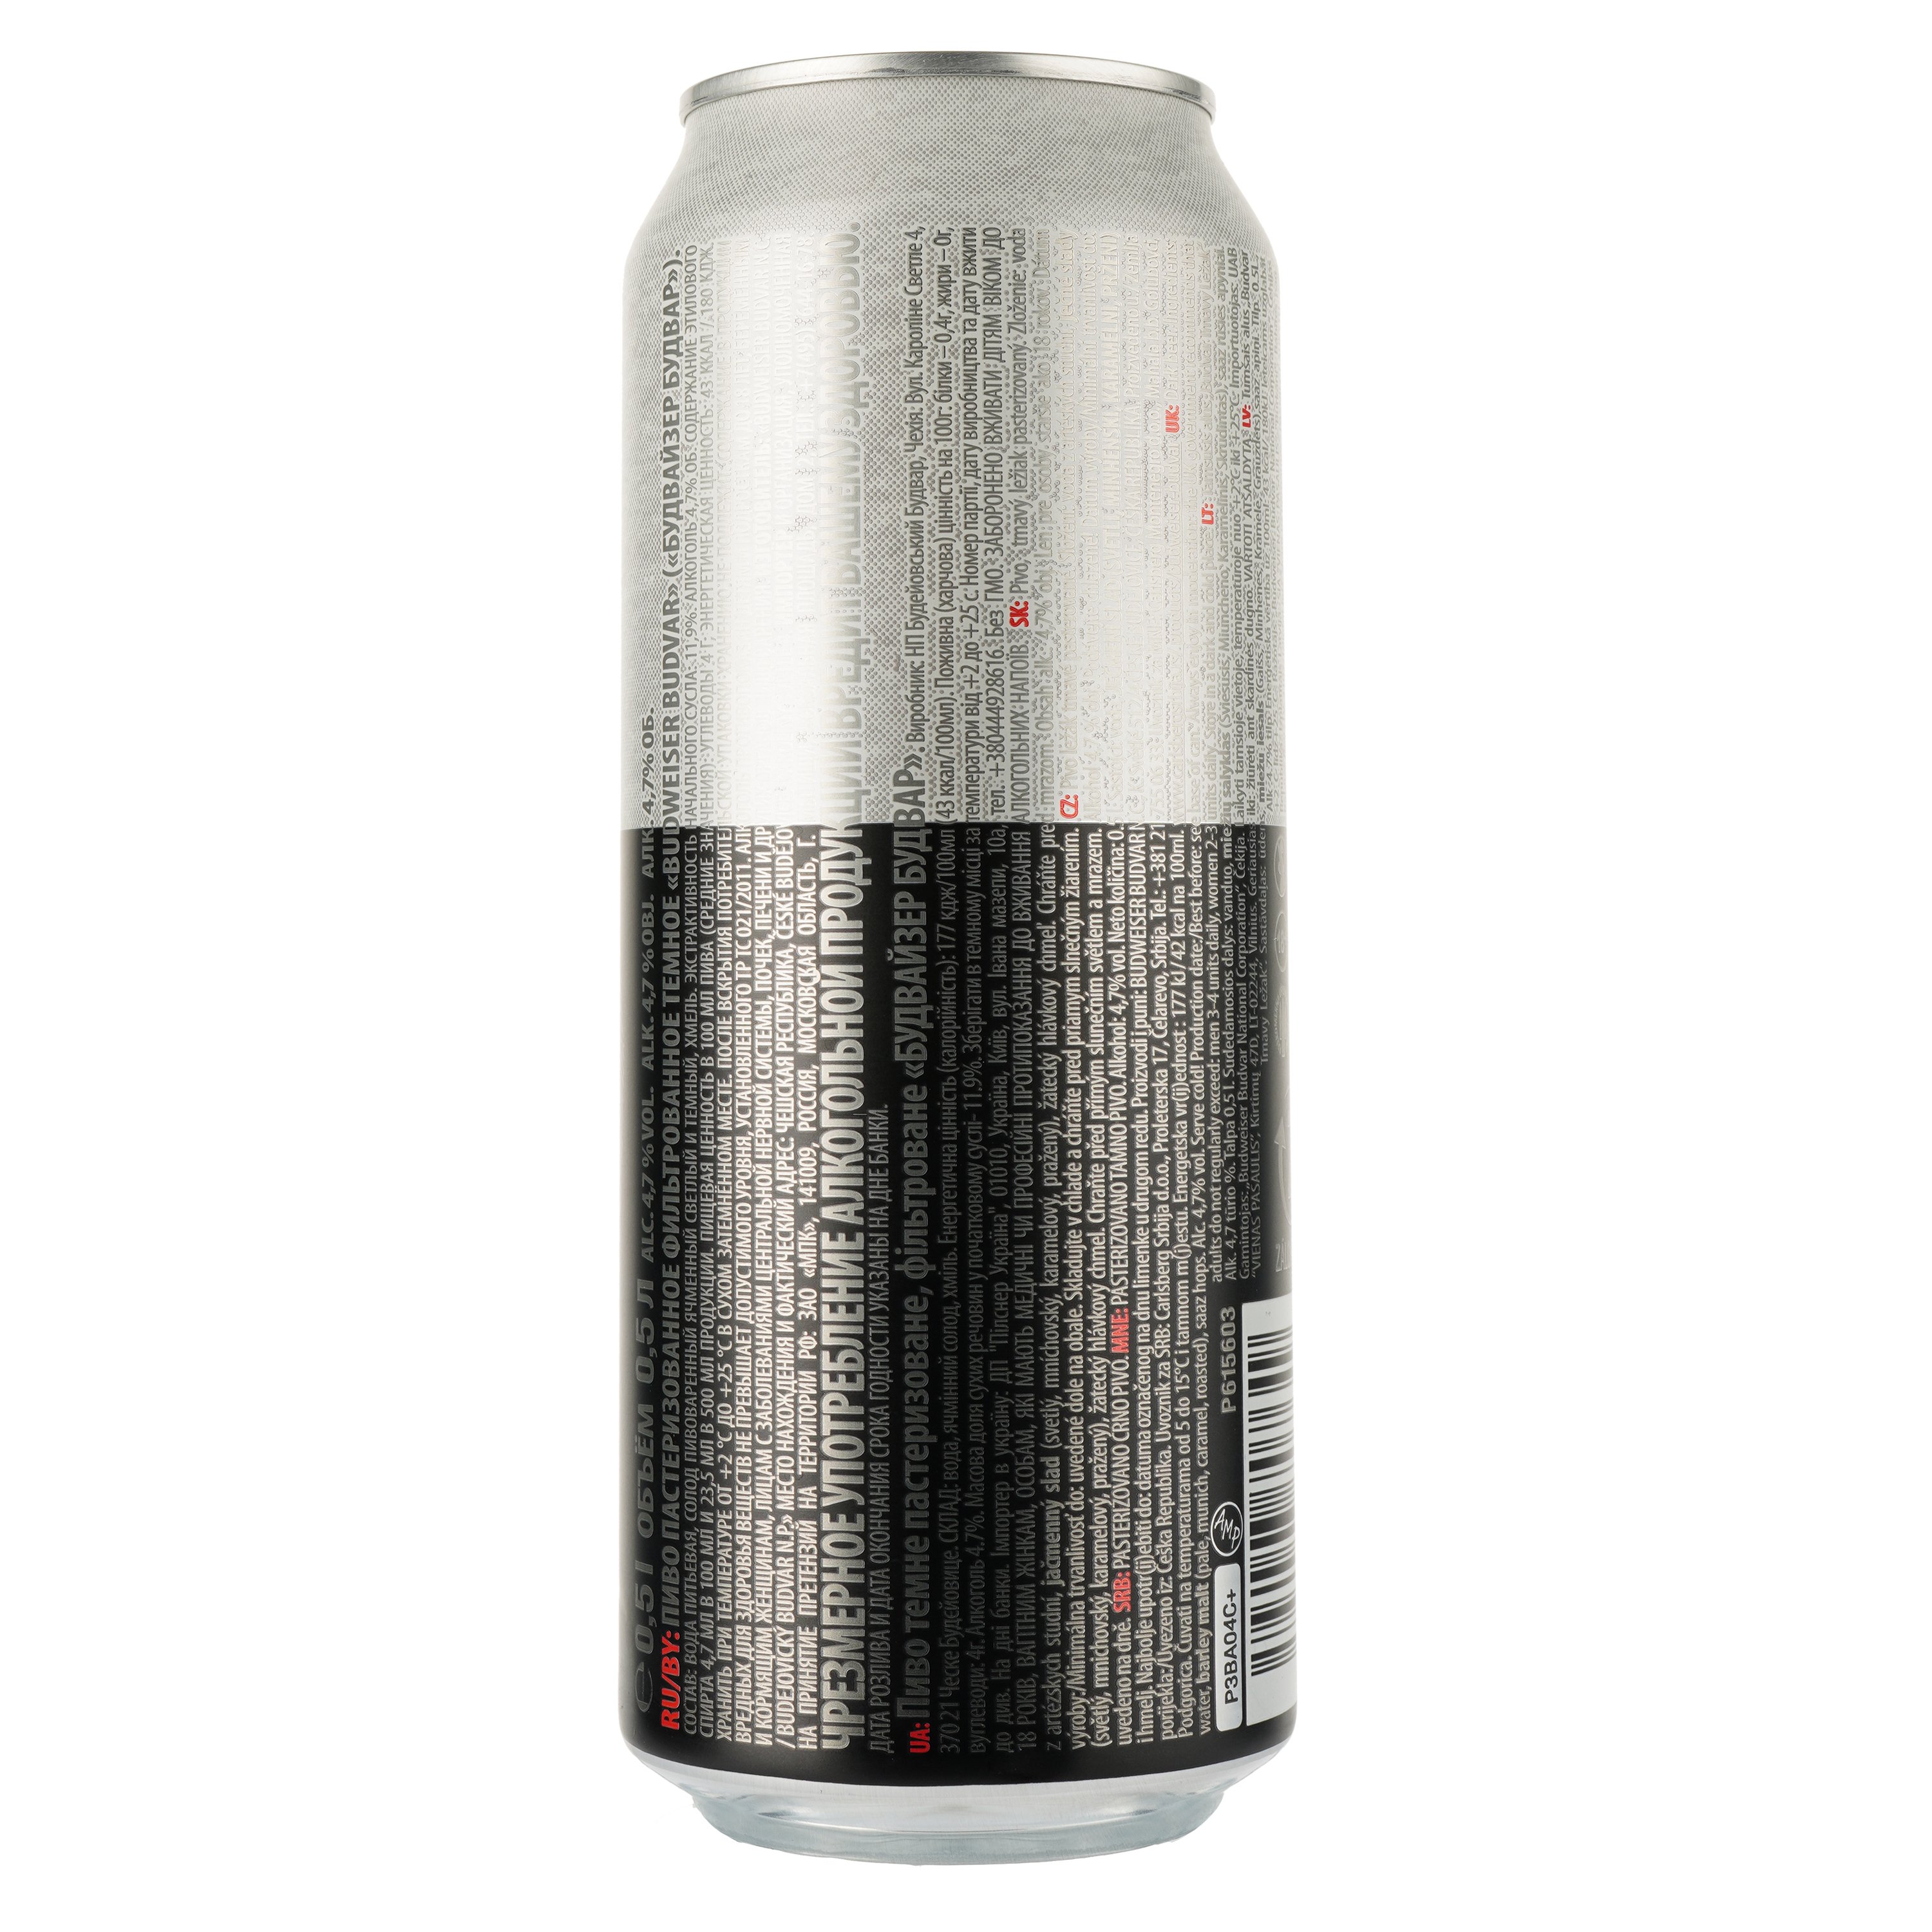 Пиво Budweiser Budvar Tmavy Lezak Dark, темное, фильтрованное, 4,7%, ж/б, 0,5 л - фото 2